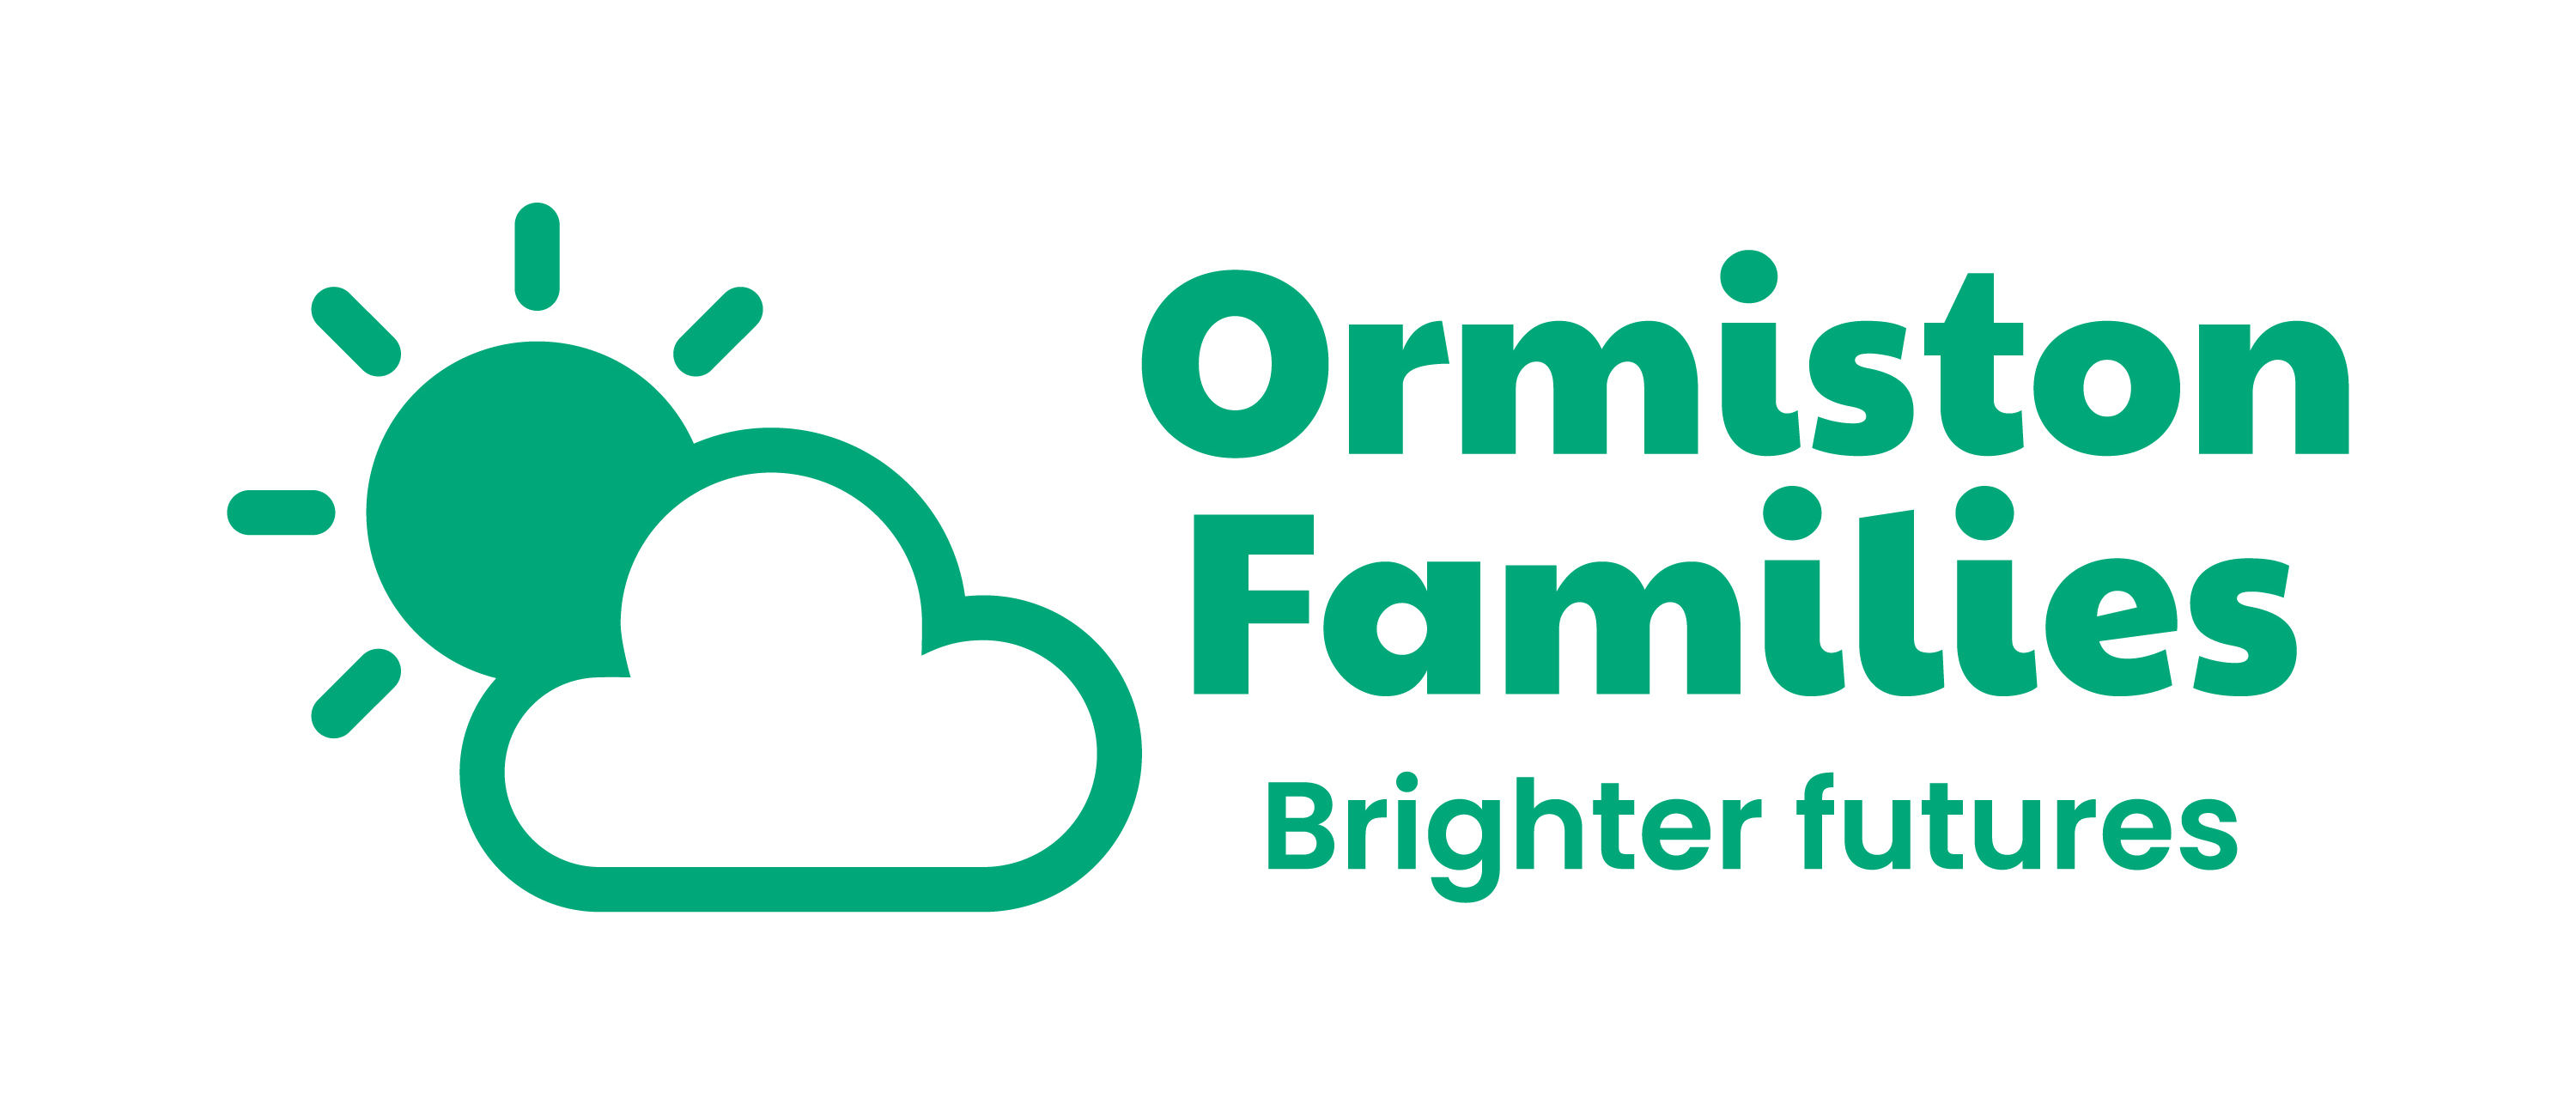 Ormiston Families logo